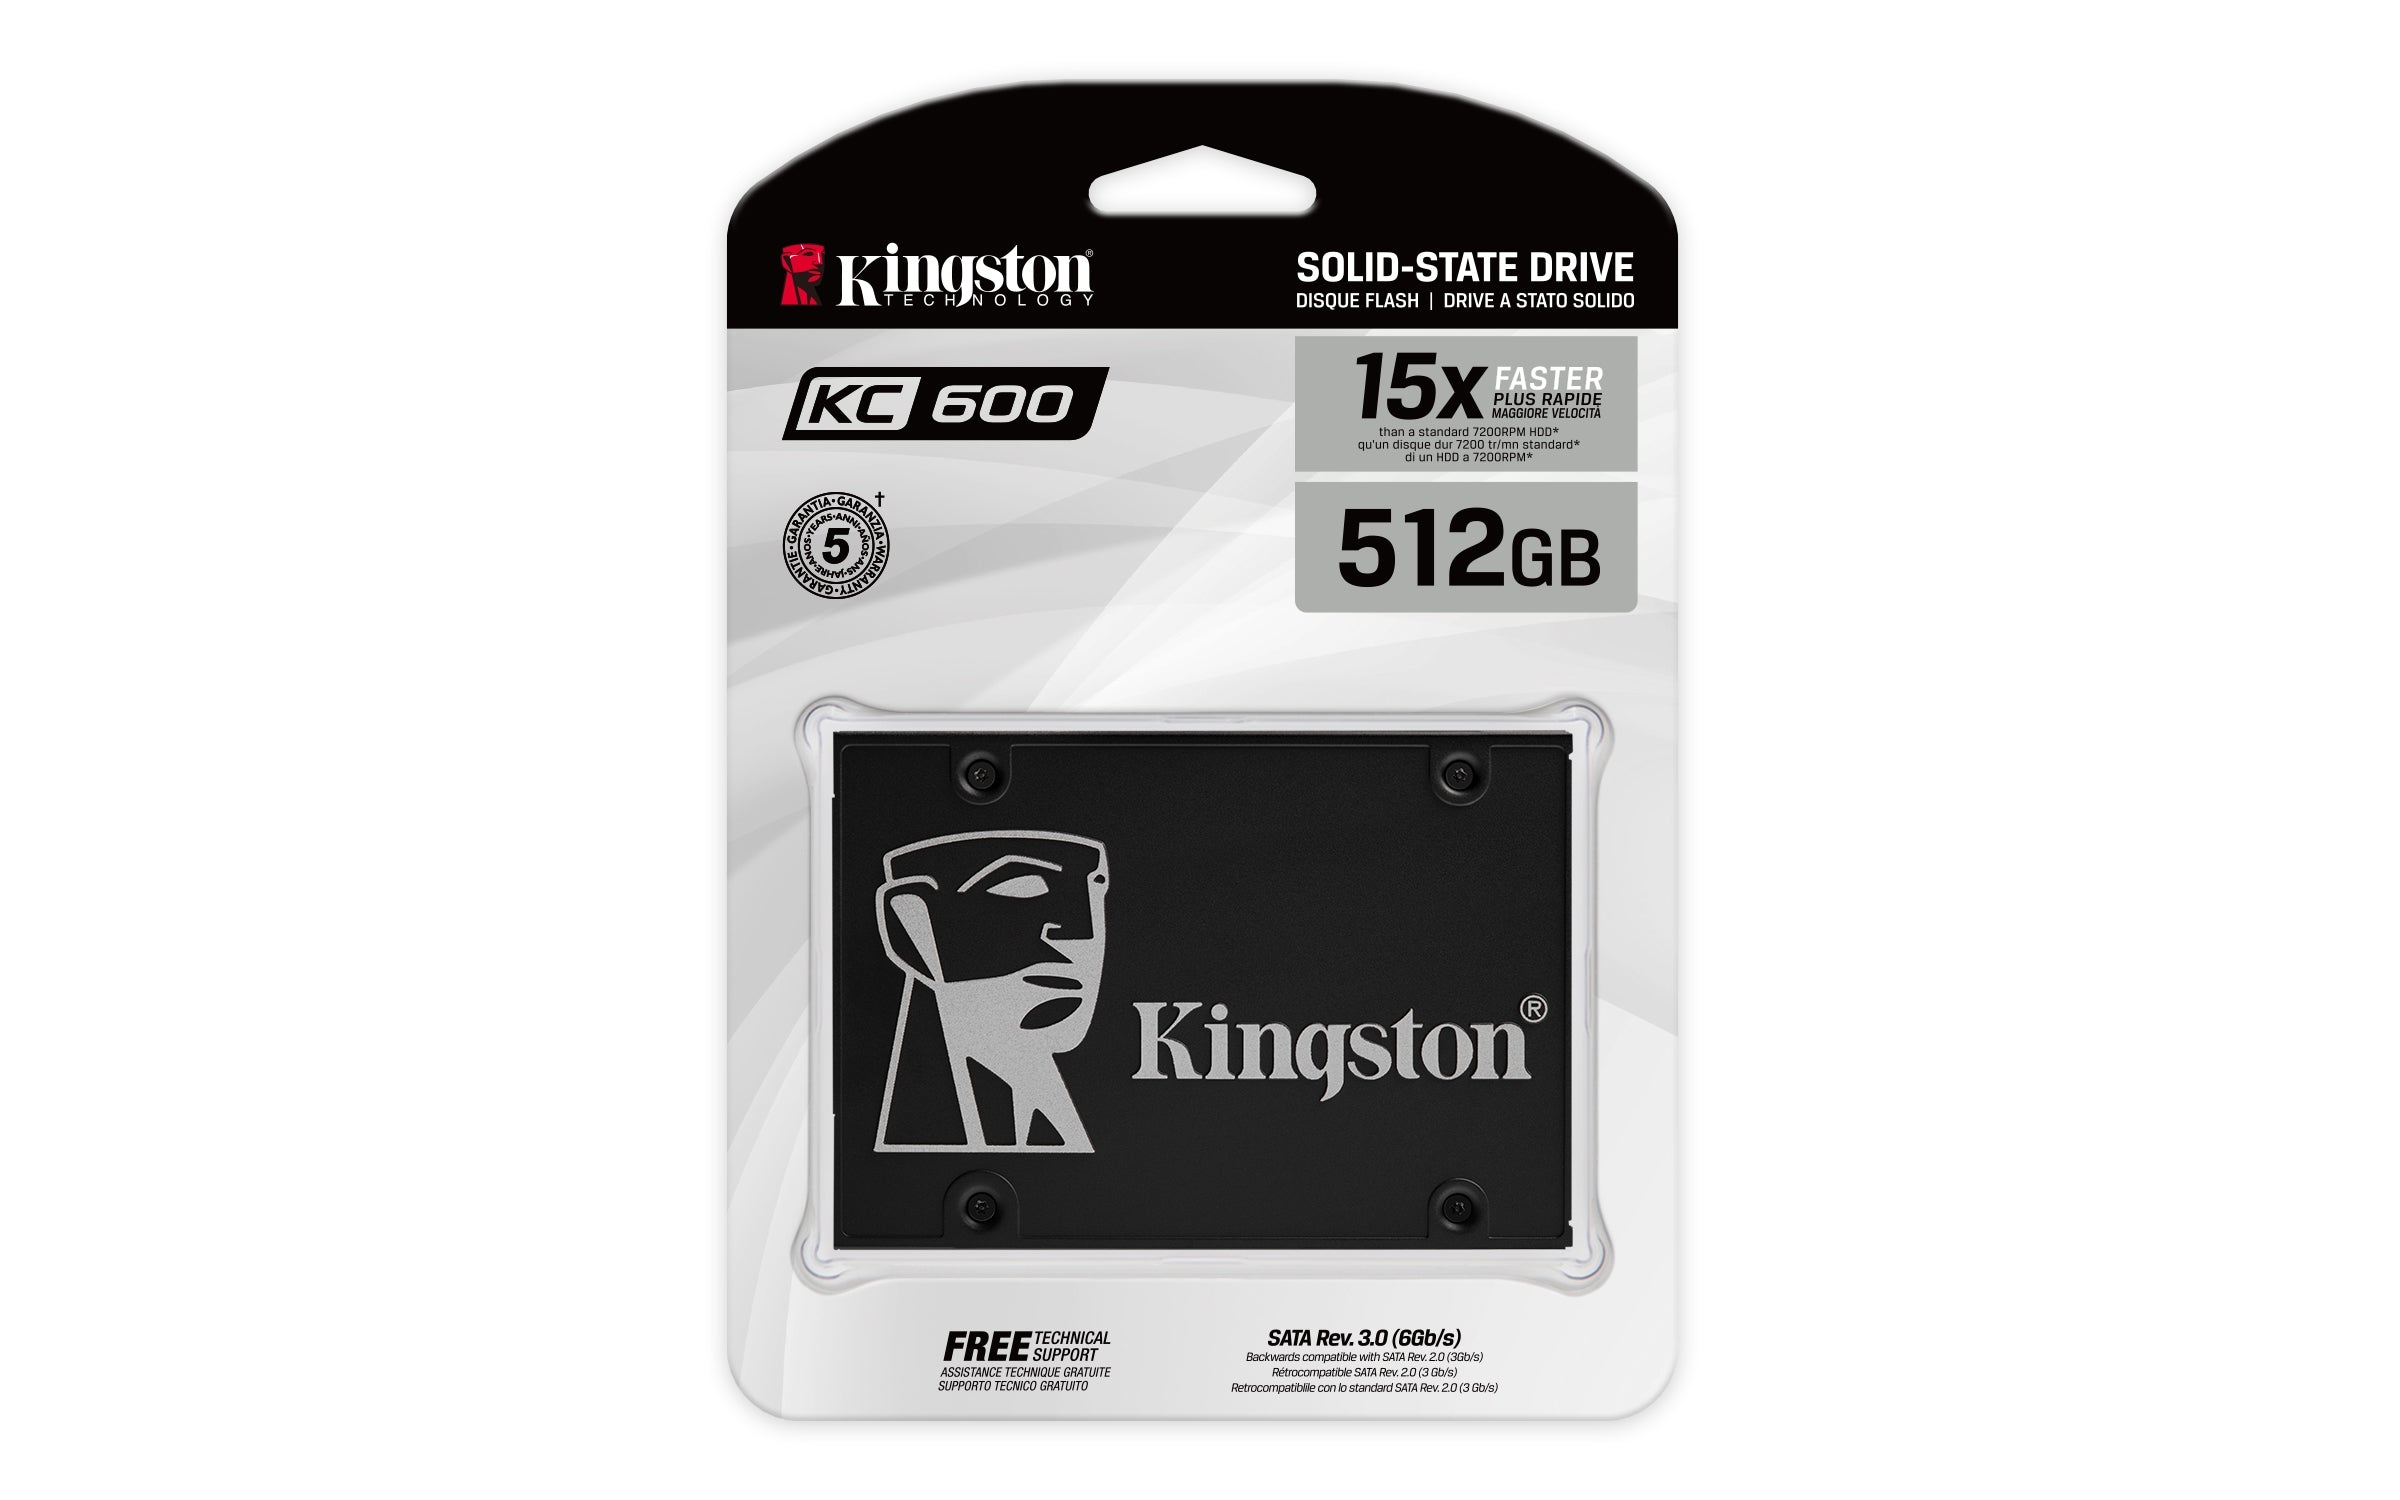 Ssd Kingston Technology Kc600 2.5 1024Gb Skc600/1024G